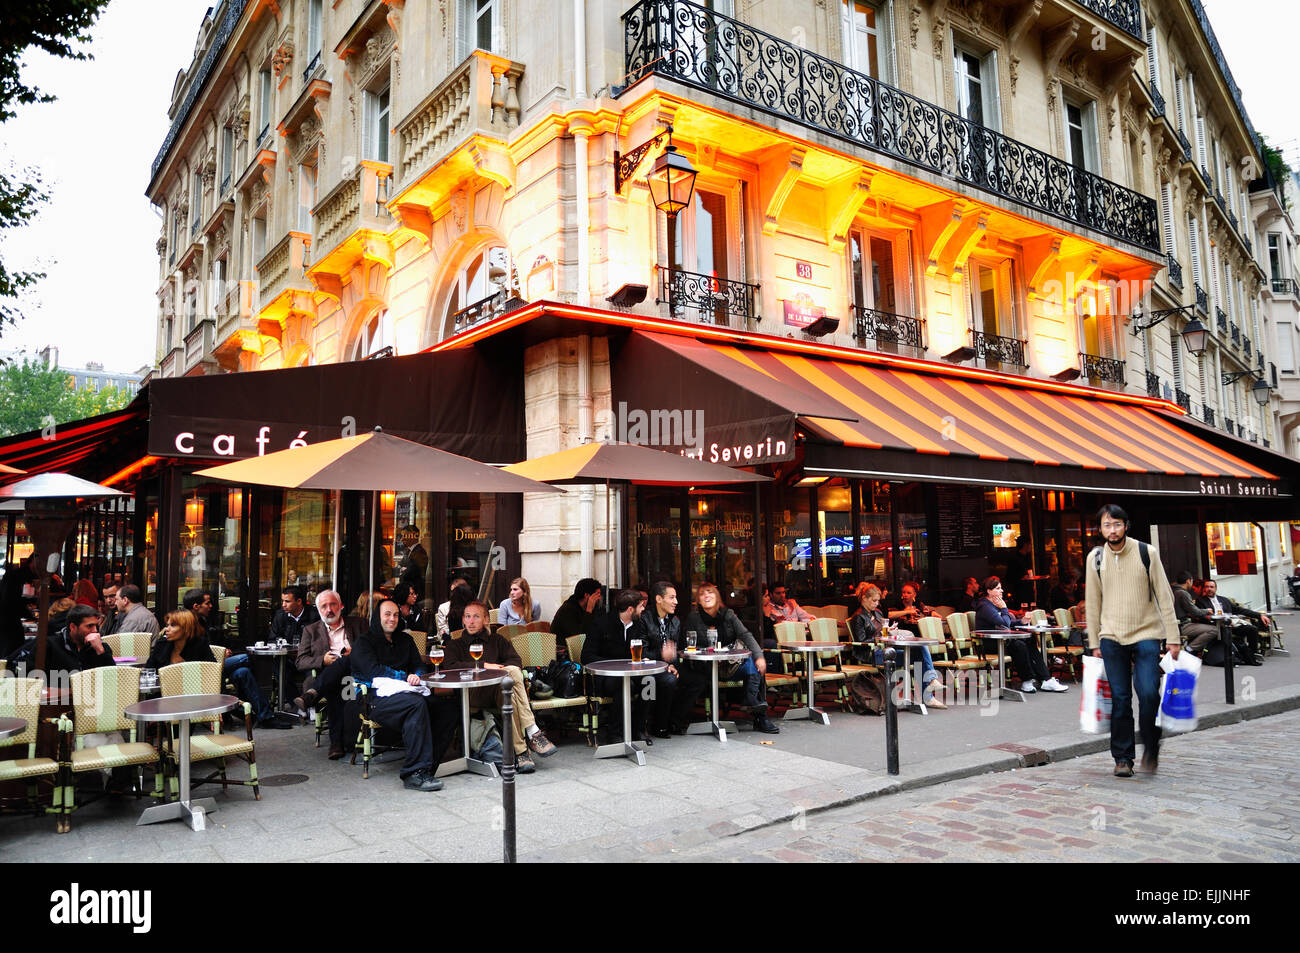 Latin quarter paris hi-res stock photography and images - Alamy